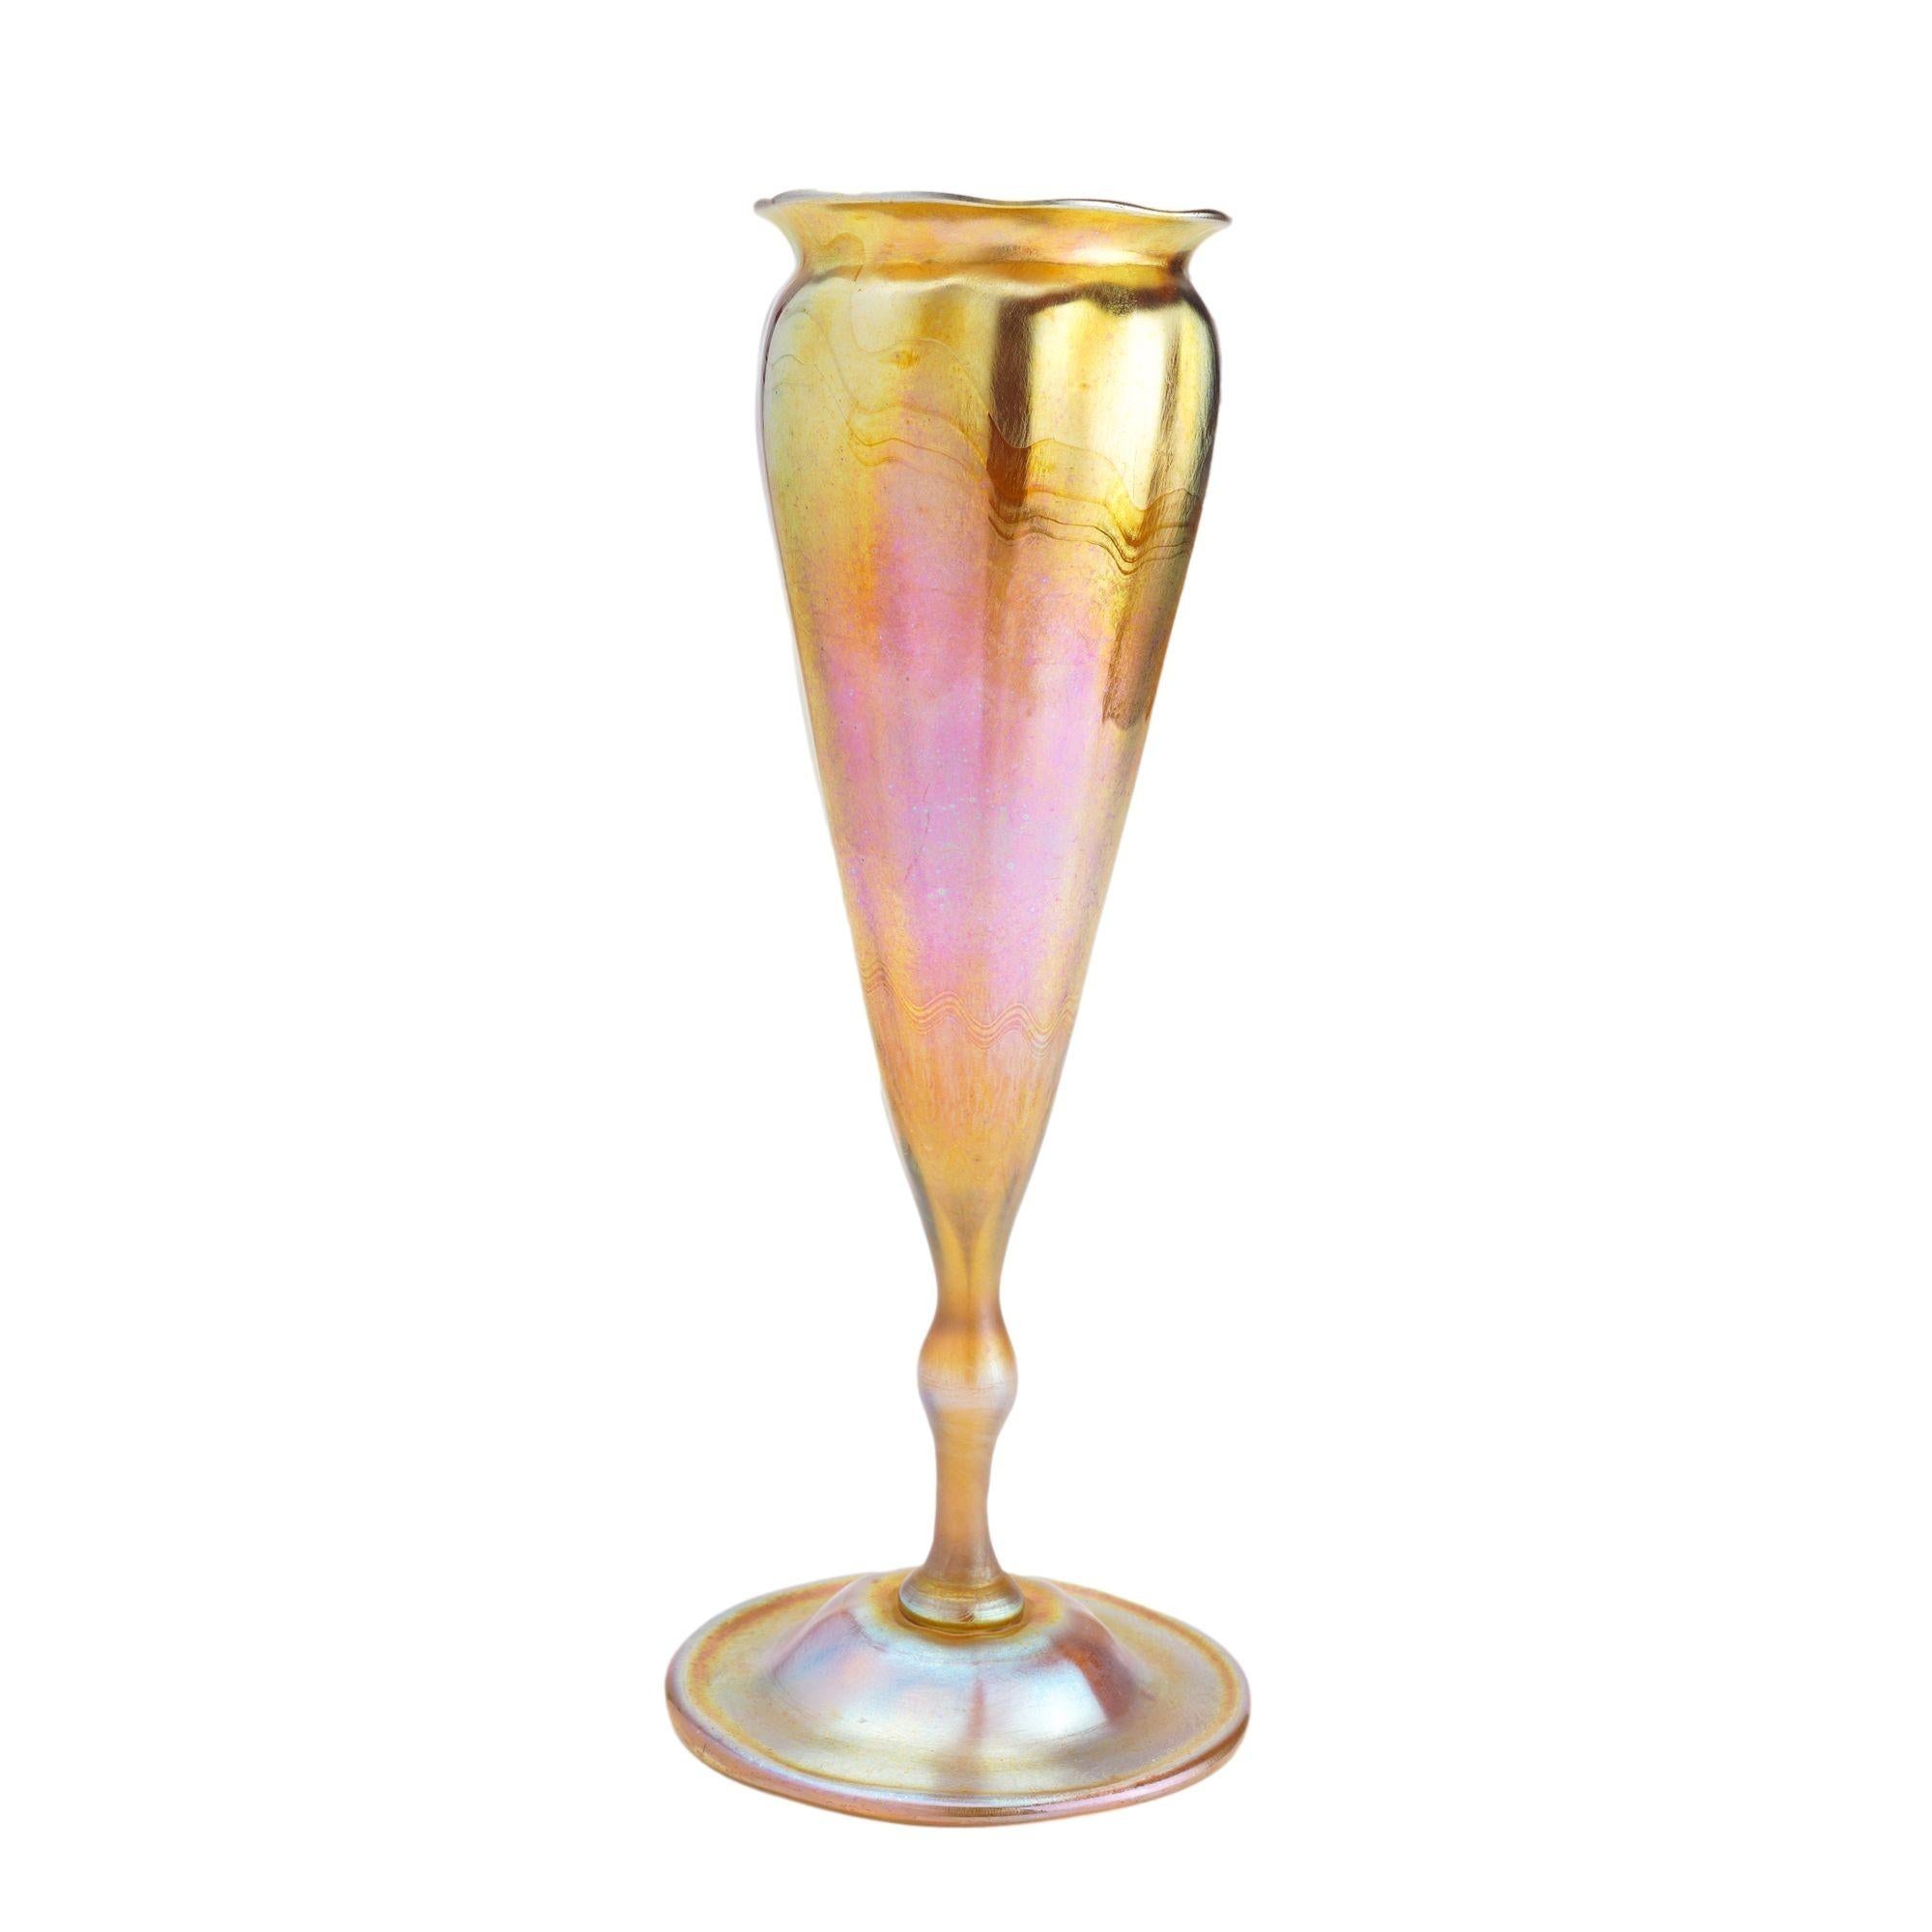 Vase en verre soufflé Favrile doré irisé de Tiffany Studio en forme de flore nervurée.
Gravé sur le dessous du pied : A.I.C.T..  8542A
Américain, Queens, New York, 1900.